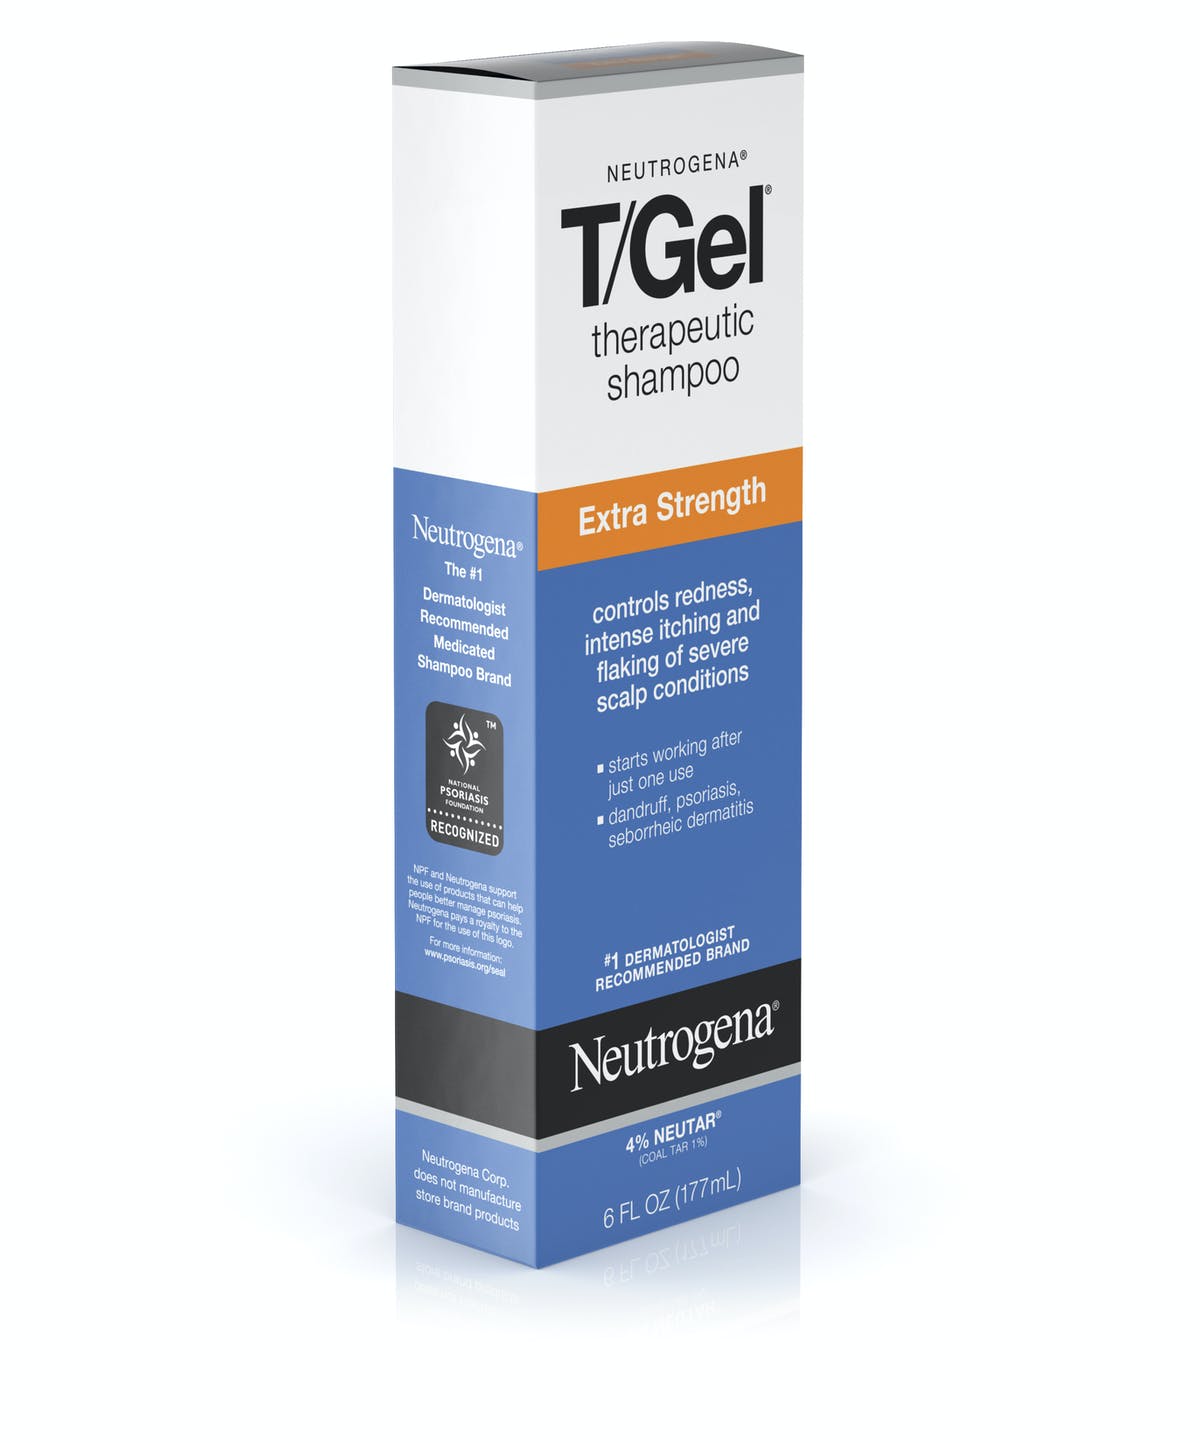 Neutrogena T/Gel Extra Strength Therapeutic Shampoo with 1% Coal Tar, 6fl oz